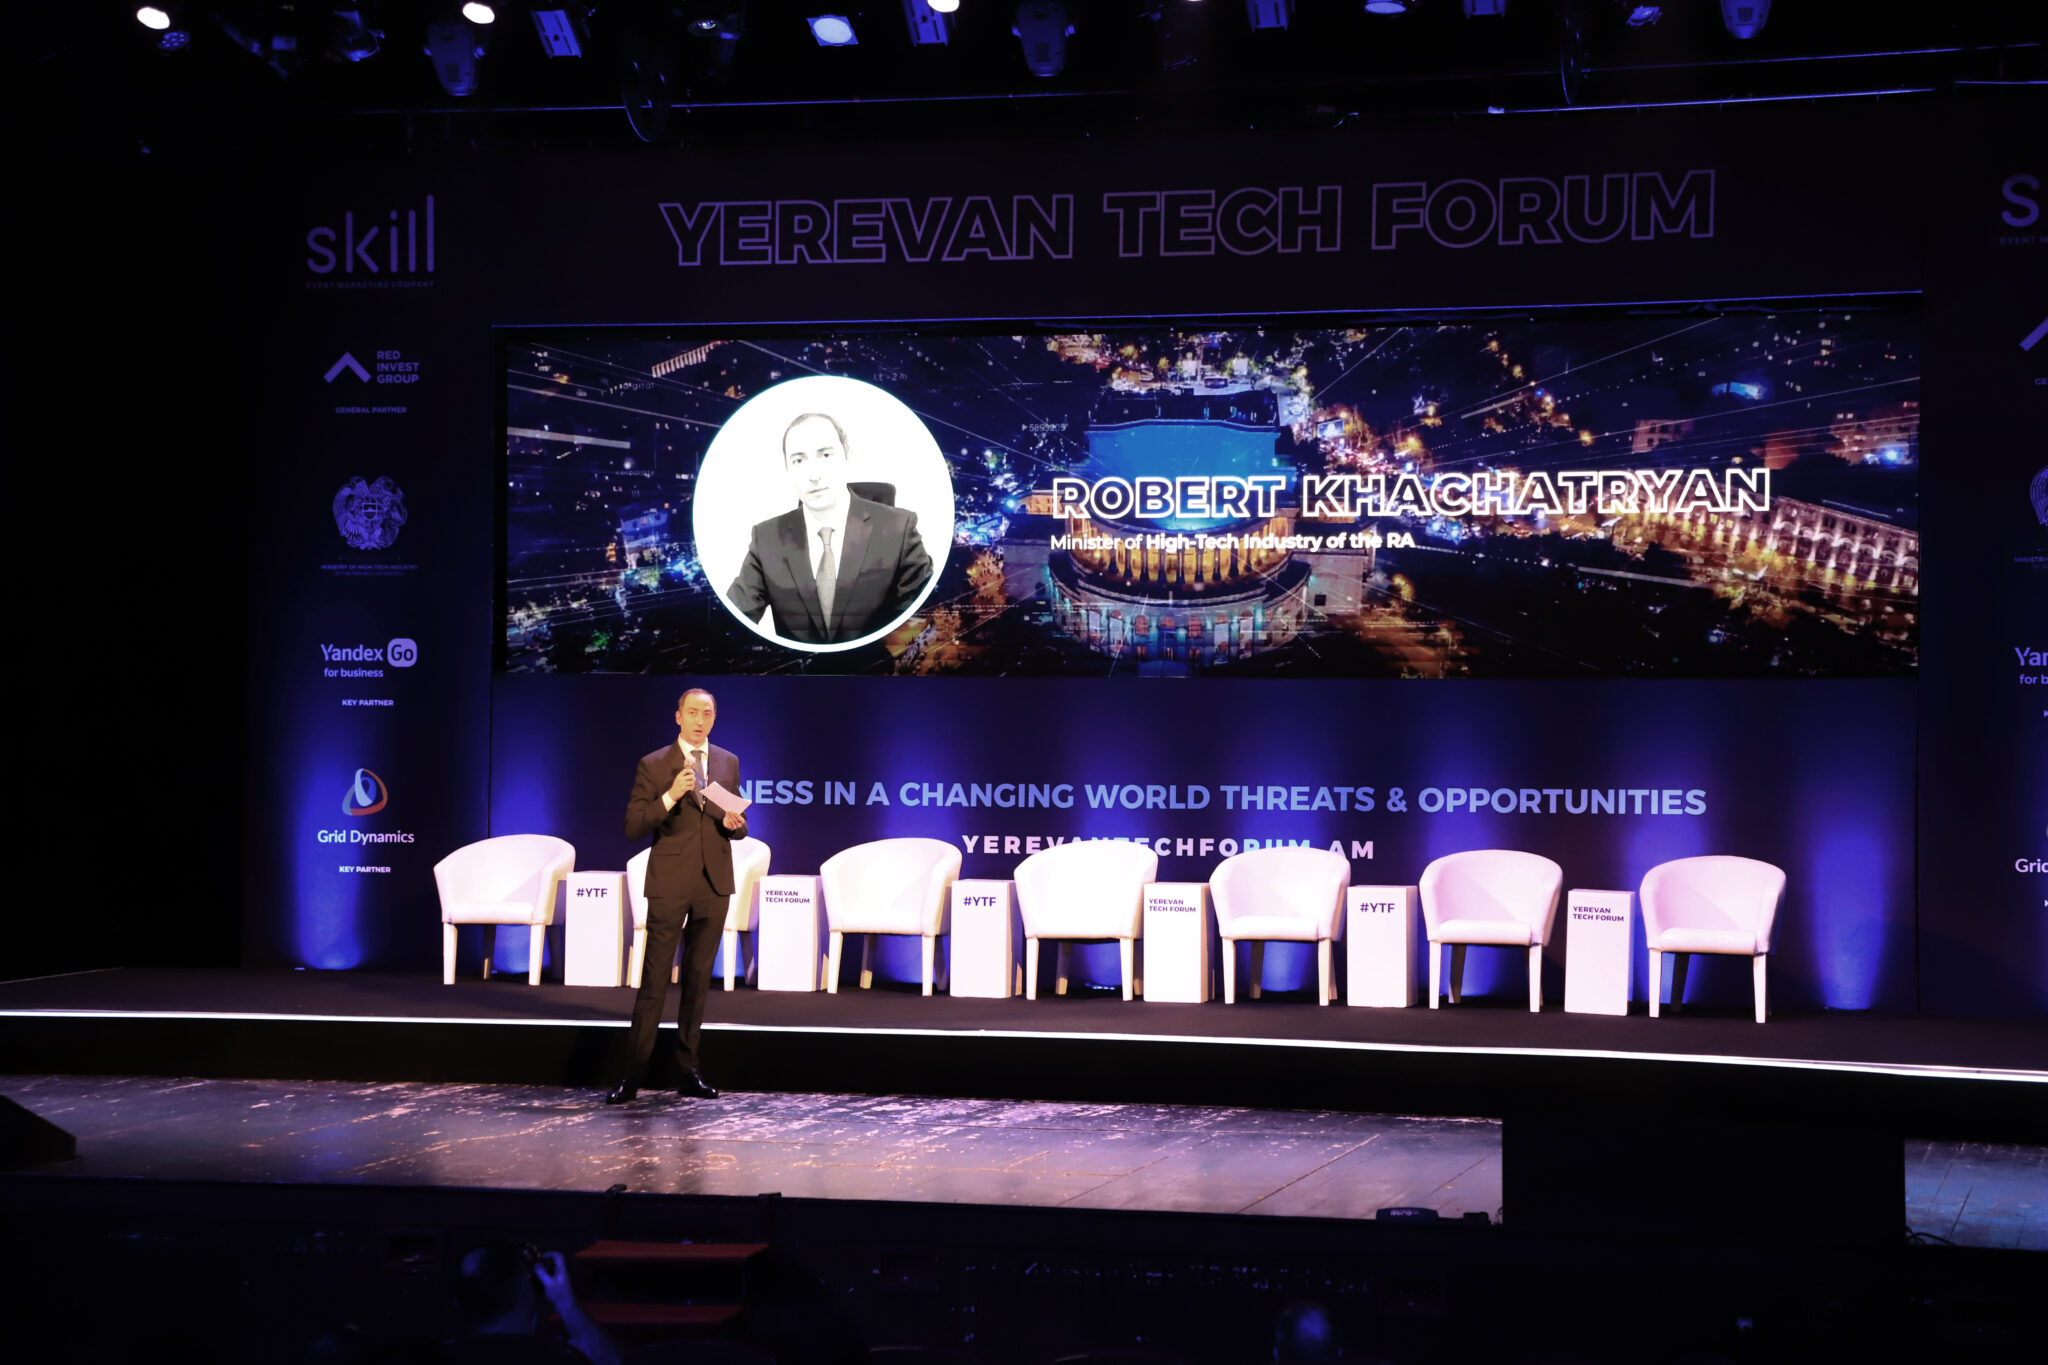 Երևան Թեք Ֆորում 2022-ը՝ խթան նորագույն տեխնոլոգիաների վրա հիմնված տնտեսության զարգացման համար